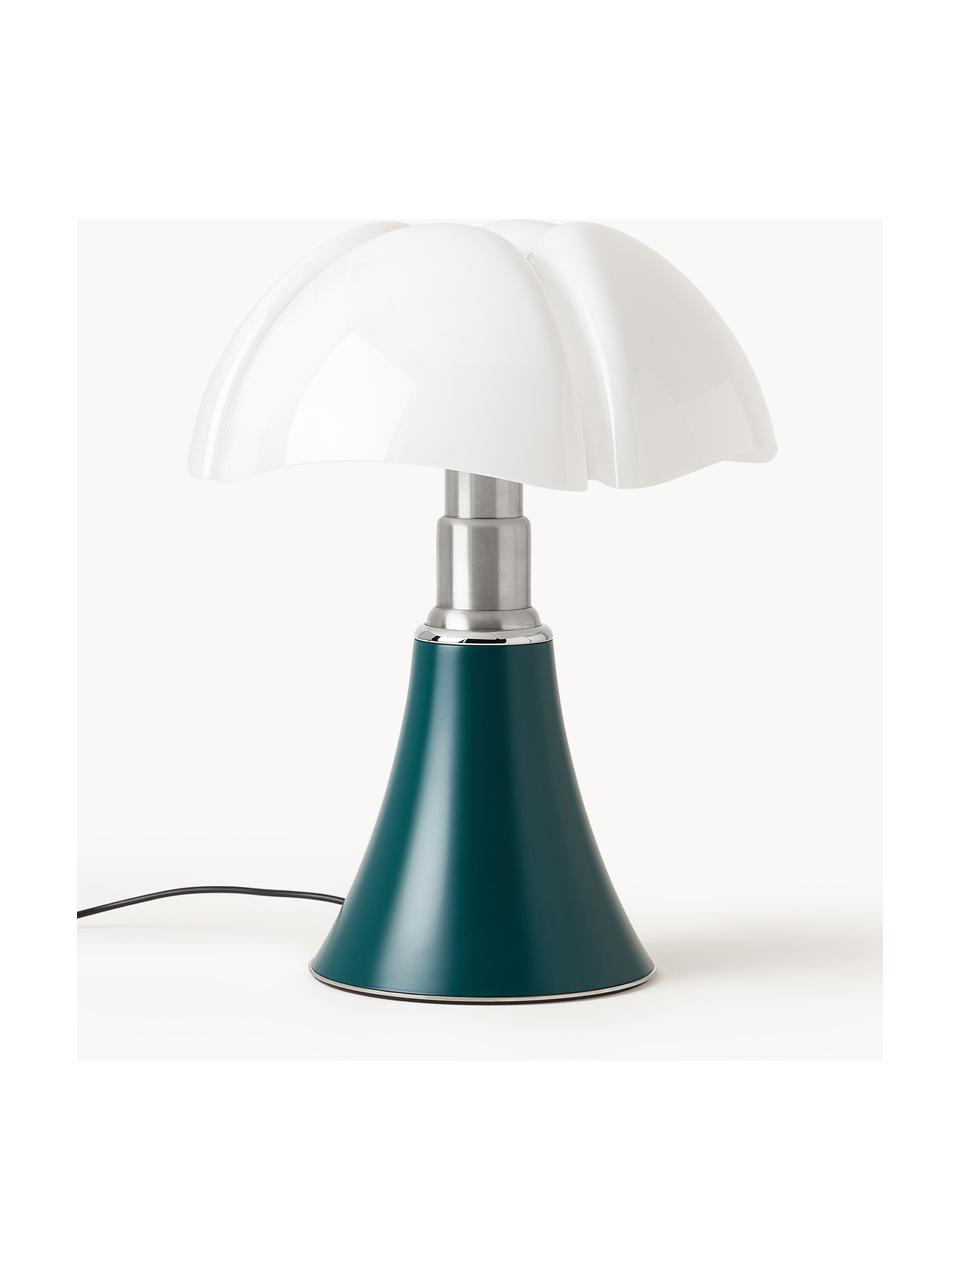 Grote dimbare LED tafellamp Pipistrello, in hoogte verstelbaar, Petrol, mat, Ø 40 x H 50-62 cm